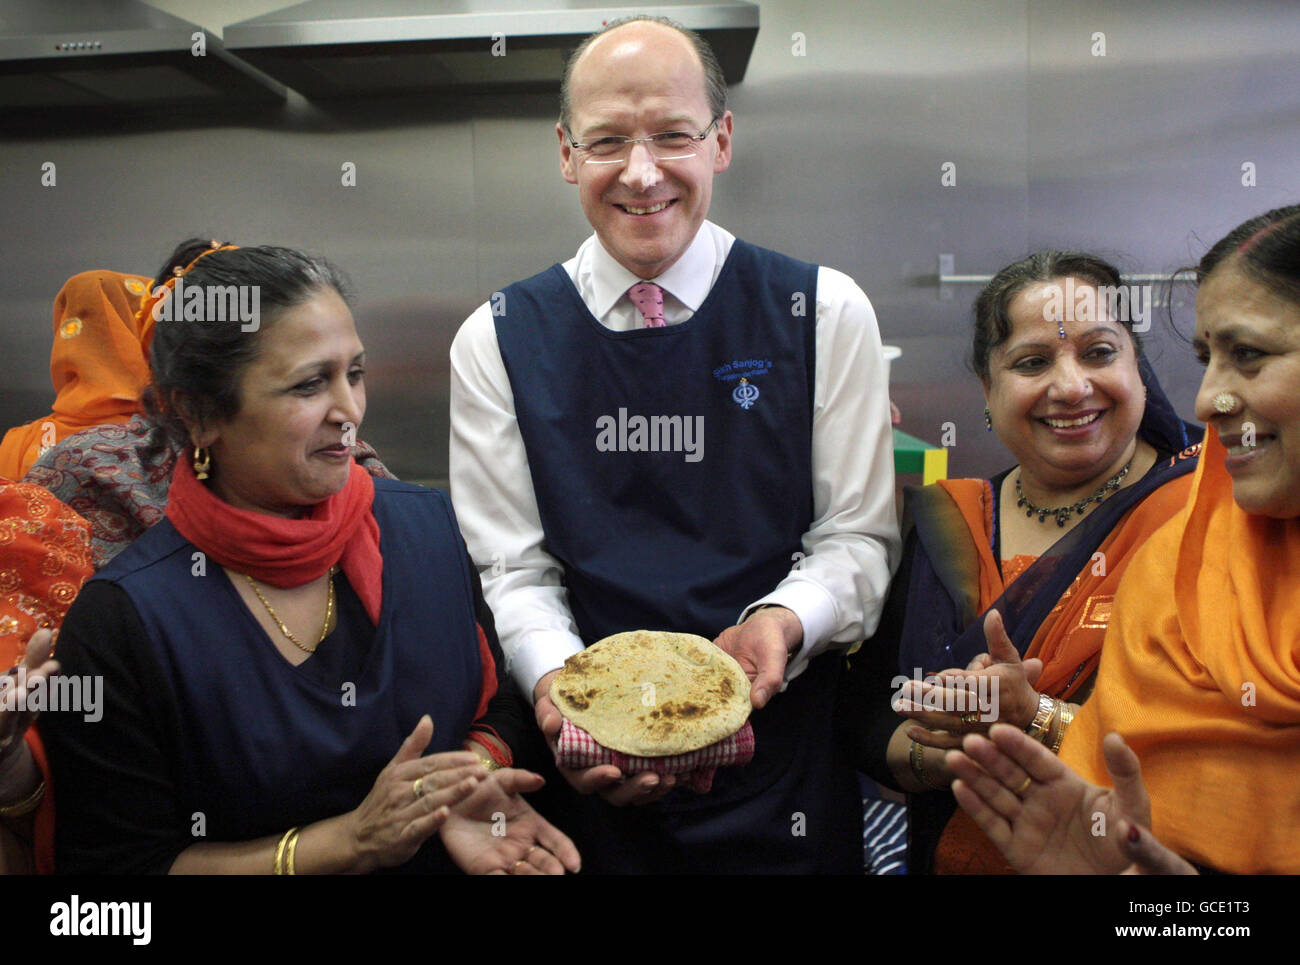 Finanzminister John Swinney erhält im Punjab'n de Rasoi, Edinburgh, Unterricht darüber, wie man Chapati ausrollen und kochen kann, während er an der offiziellen Eröffnung des neuen Sikh-Cafés teilnimmt, das mit Hilfe von Regierungsmitteln eingerichtet wurde. Stockfoto